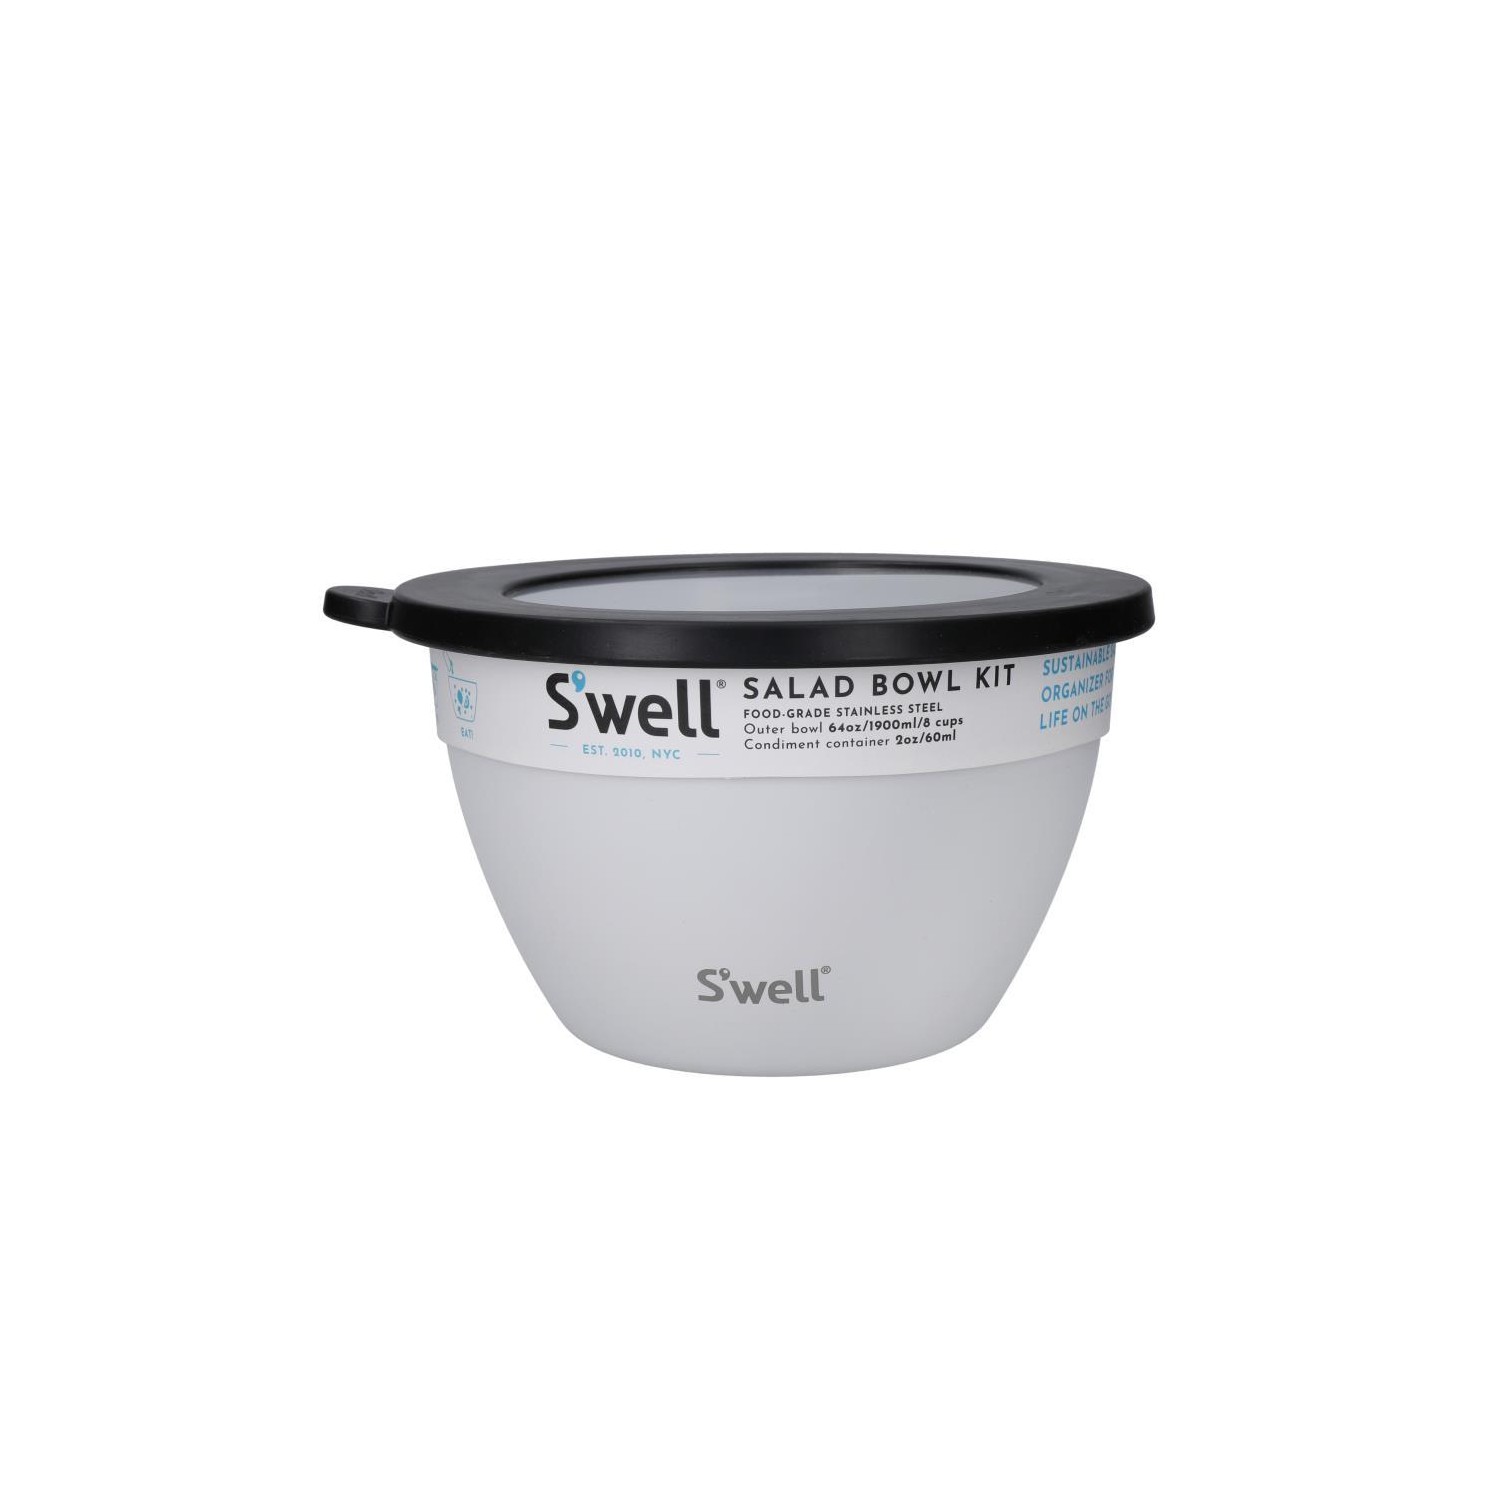 Swell 64 oz salad bowl